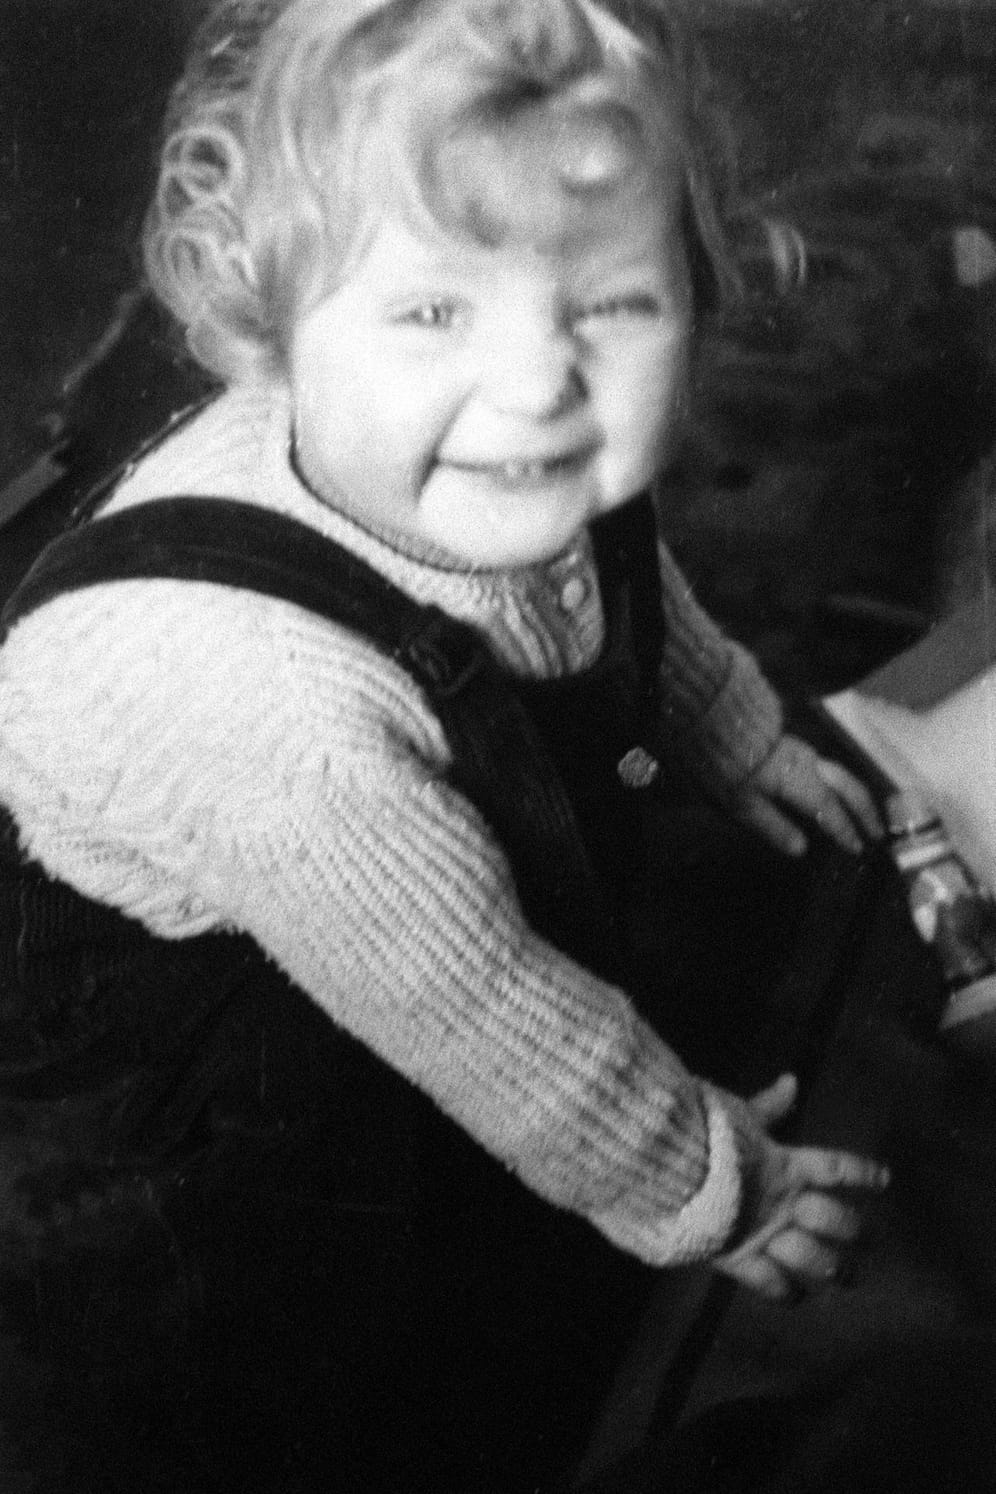 Um 1957 ist dieses Kinderfoto entstanden. Da war Angela Kasner etwa drei Jahre alt. Dass sie einmal Bundeskanzlerin werden würde, hätte damals wohl niemand geglaubt.